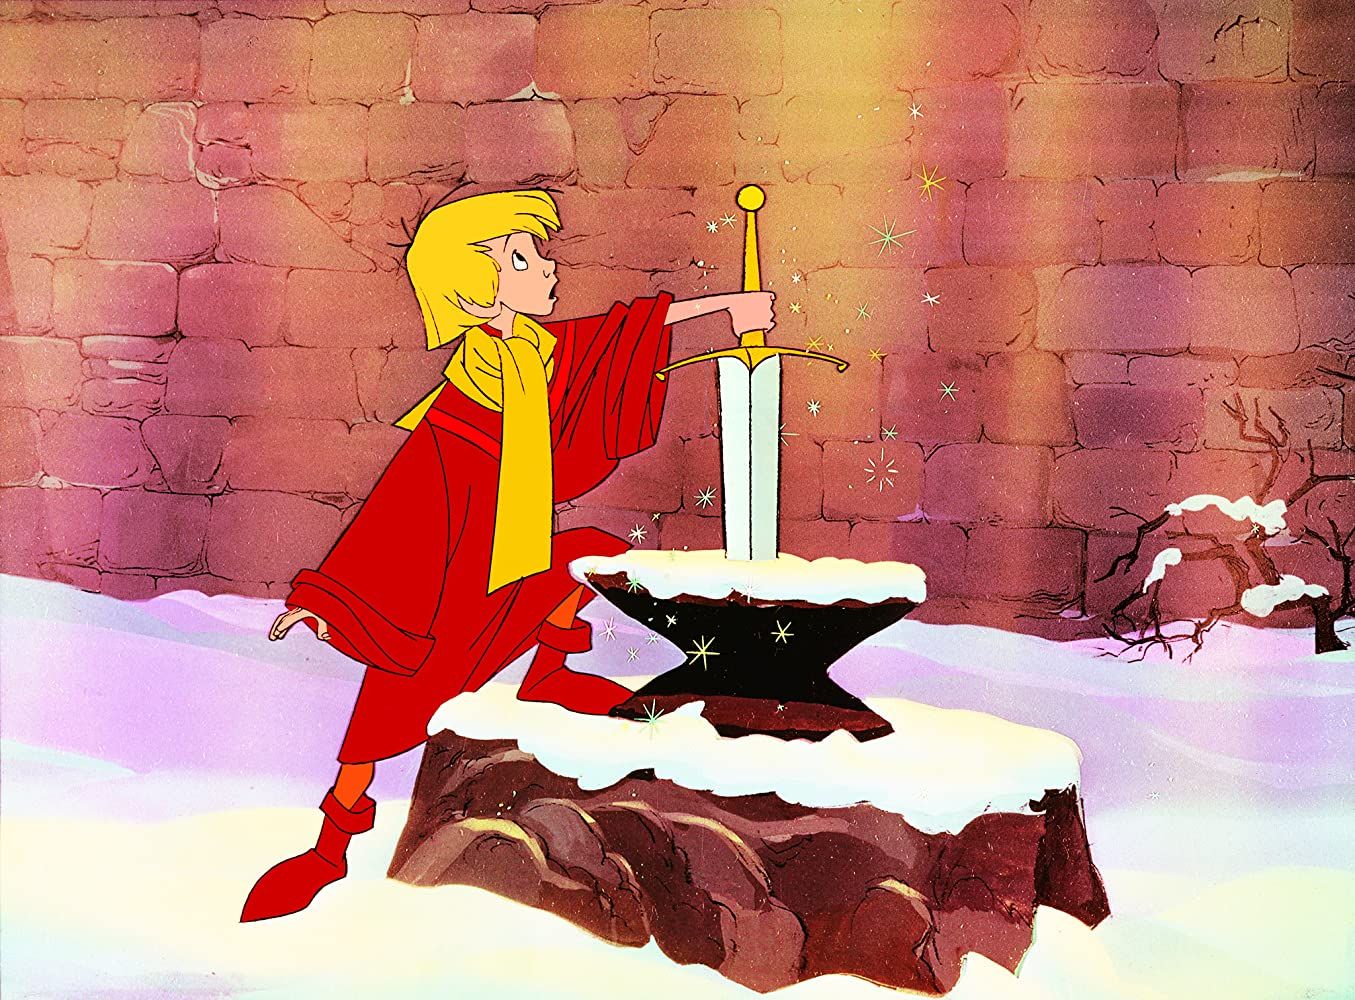 A Disney kardja a kőben marad az egyik legjobb Arthur King-adaptáció